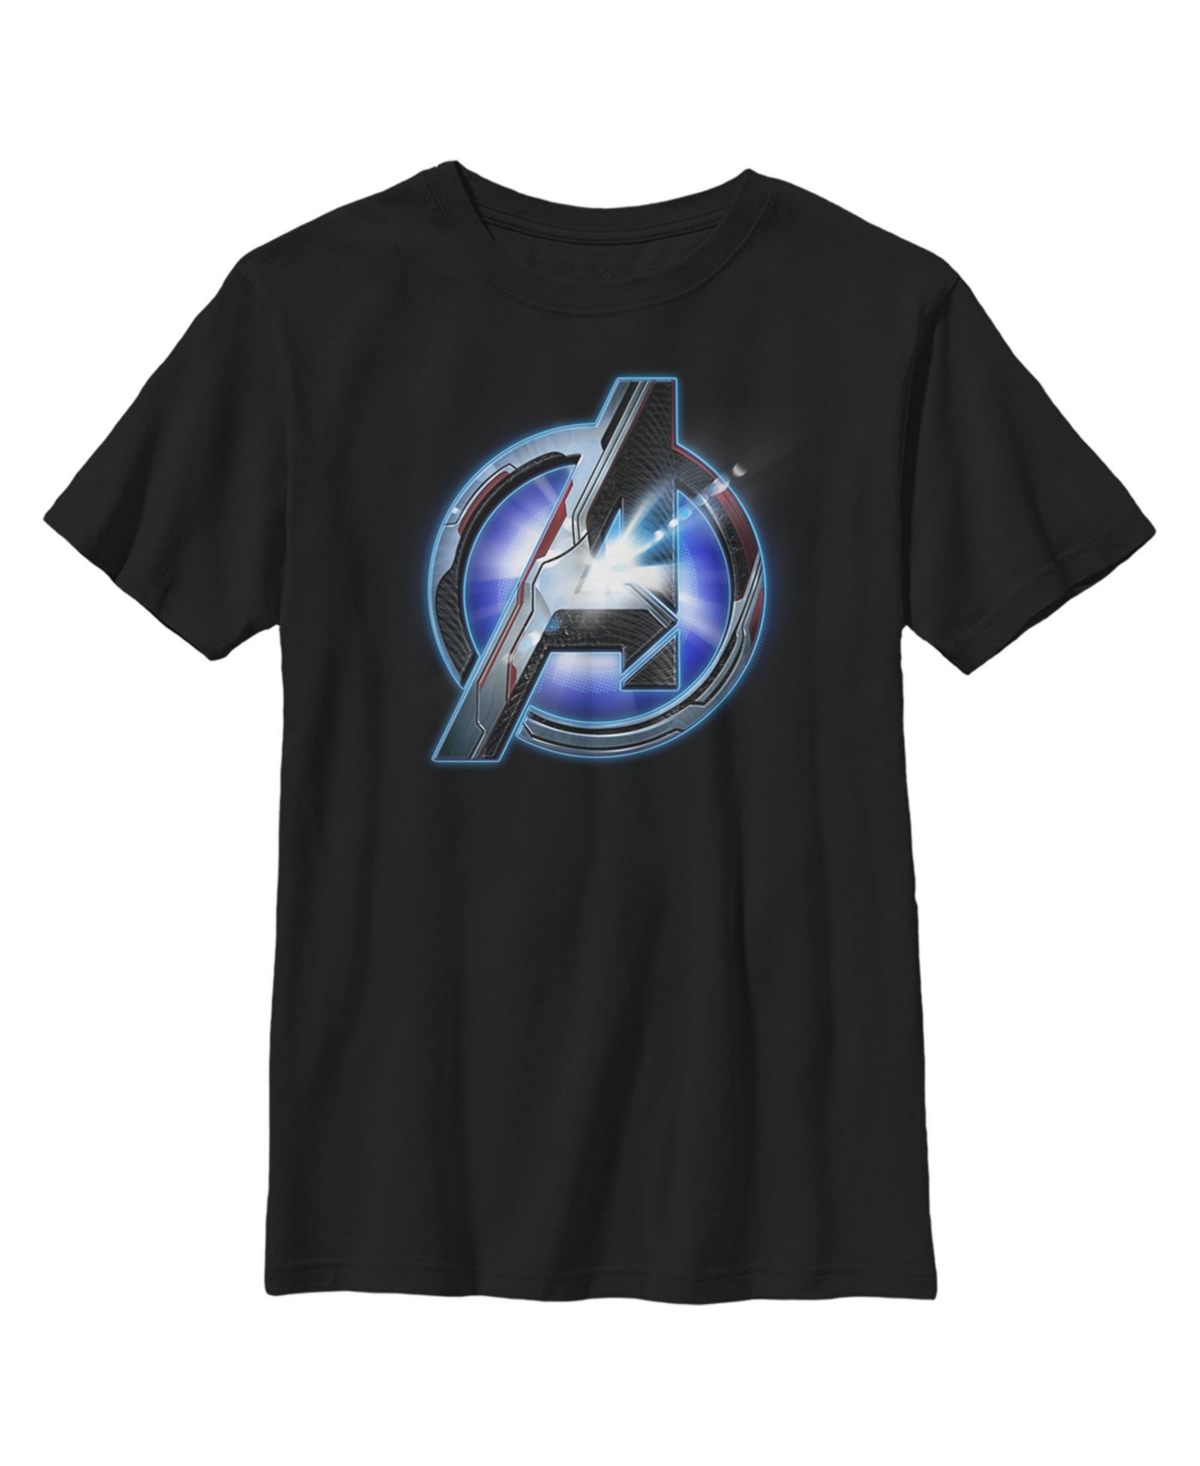 Boy's Marvel Avengers: Endgame High Tech Logo Child T-Shirt - Black